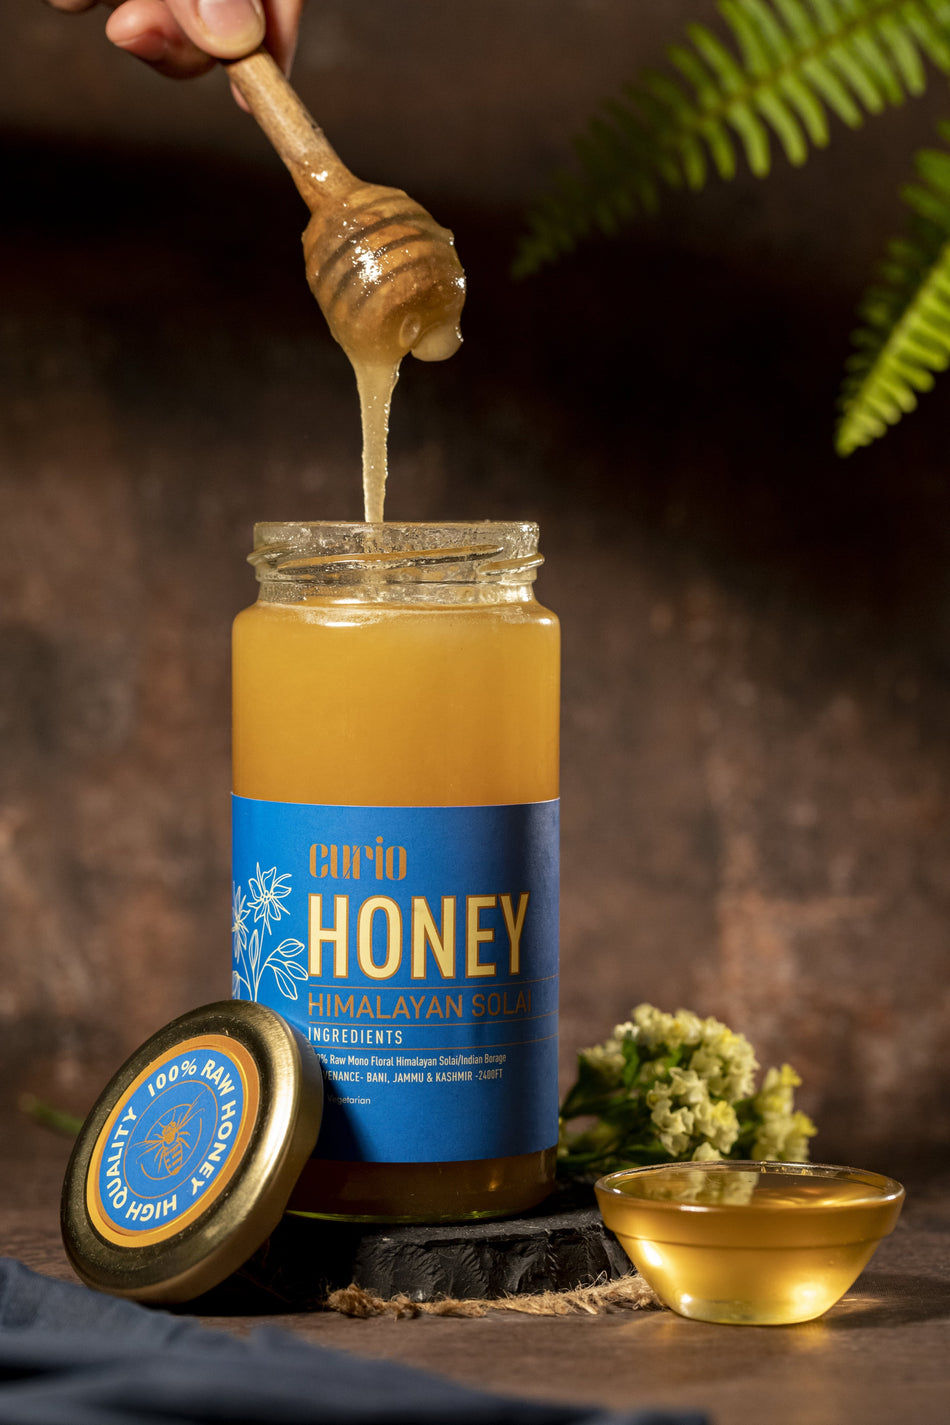 Himalayan Solai | Indian Borage Honey